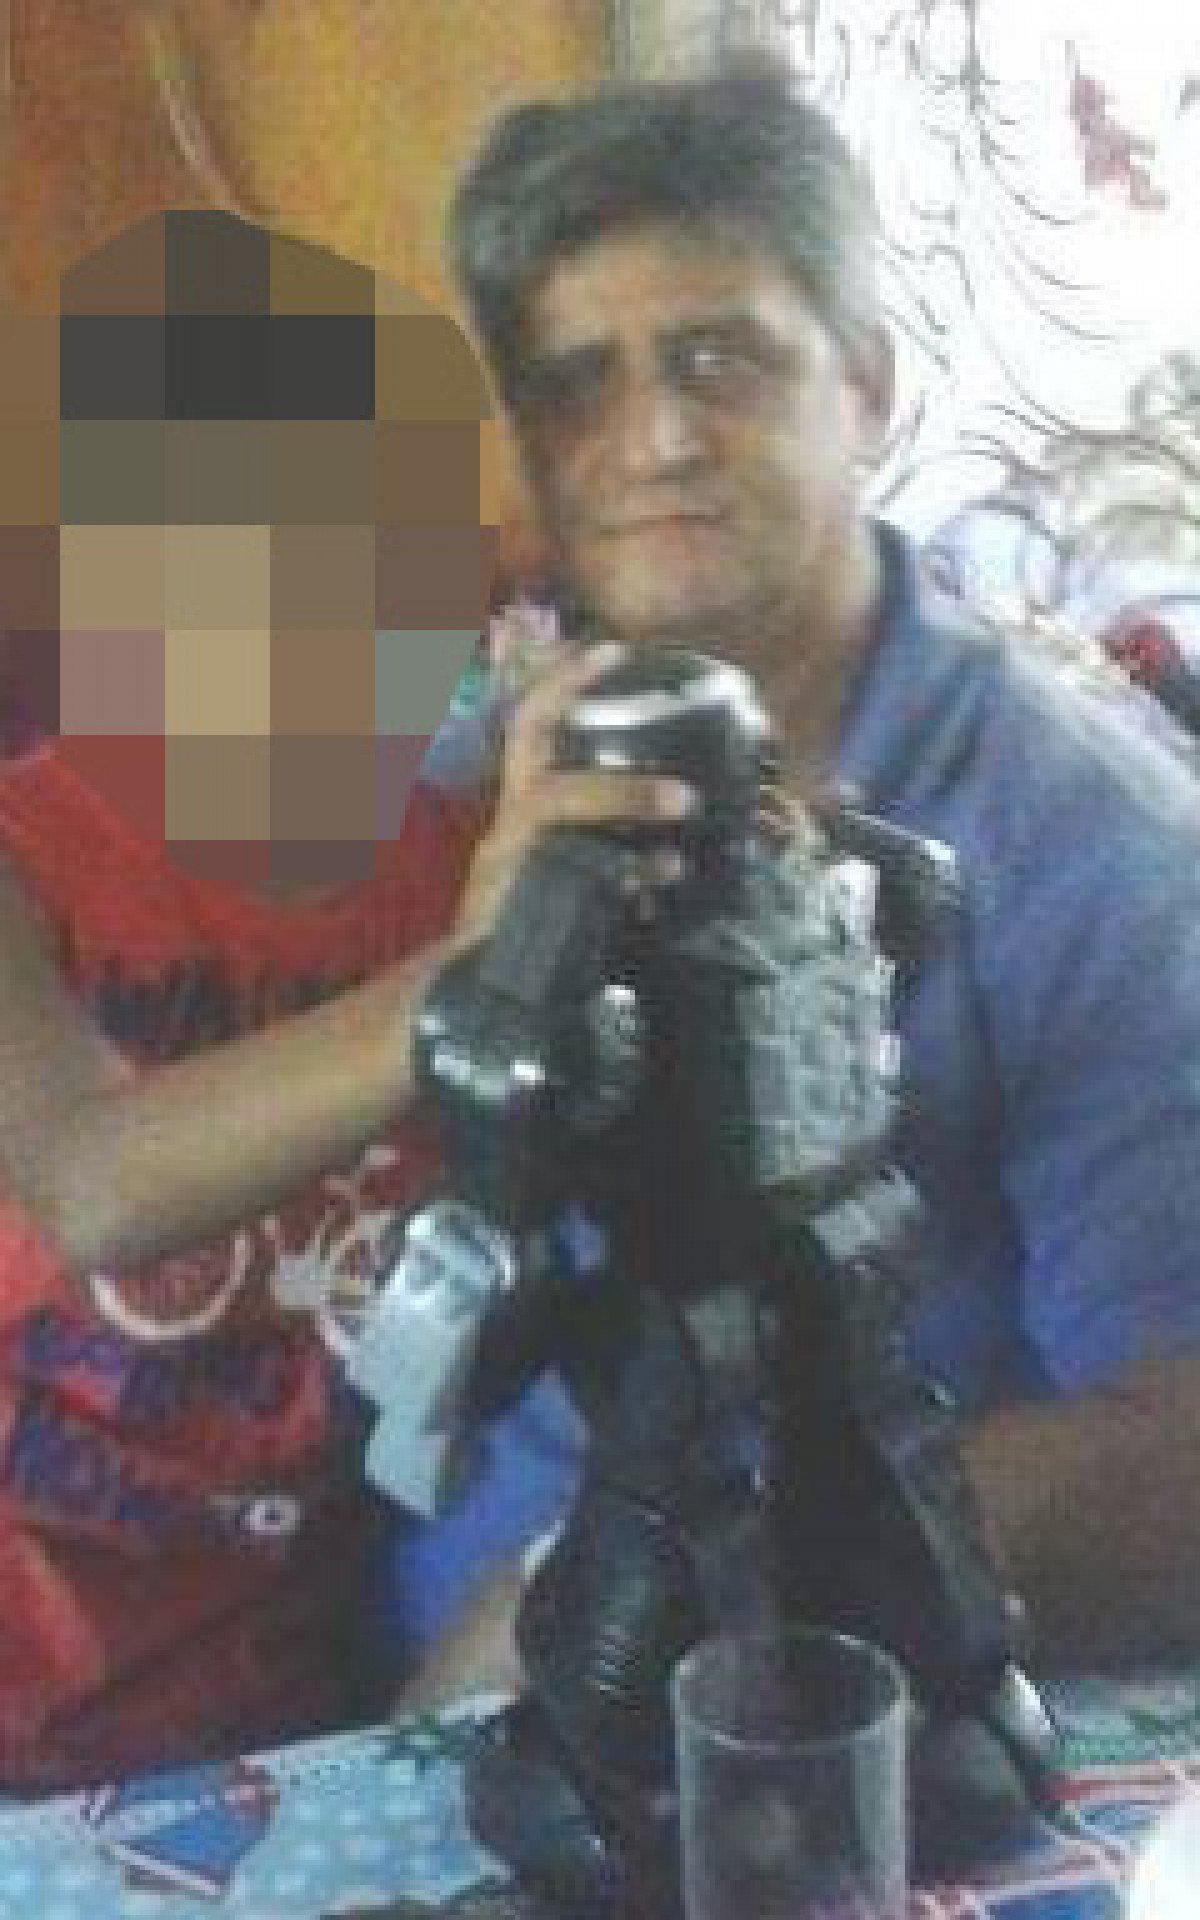 O pai Luis Cláudio Pinheiro, de 58 anos, e o adolescente em foto antiga - Arquivo pessoal'